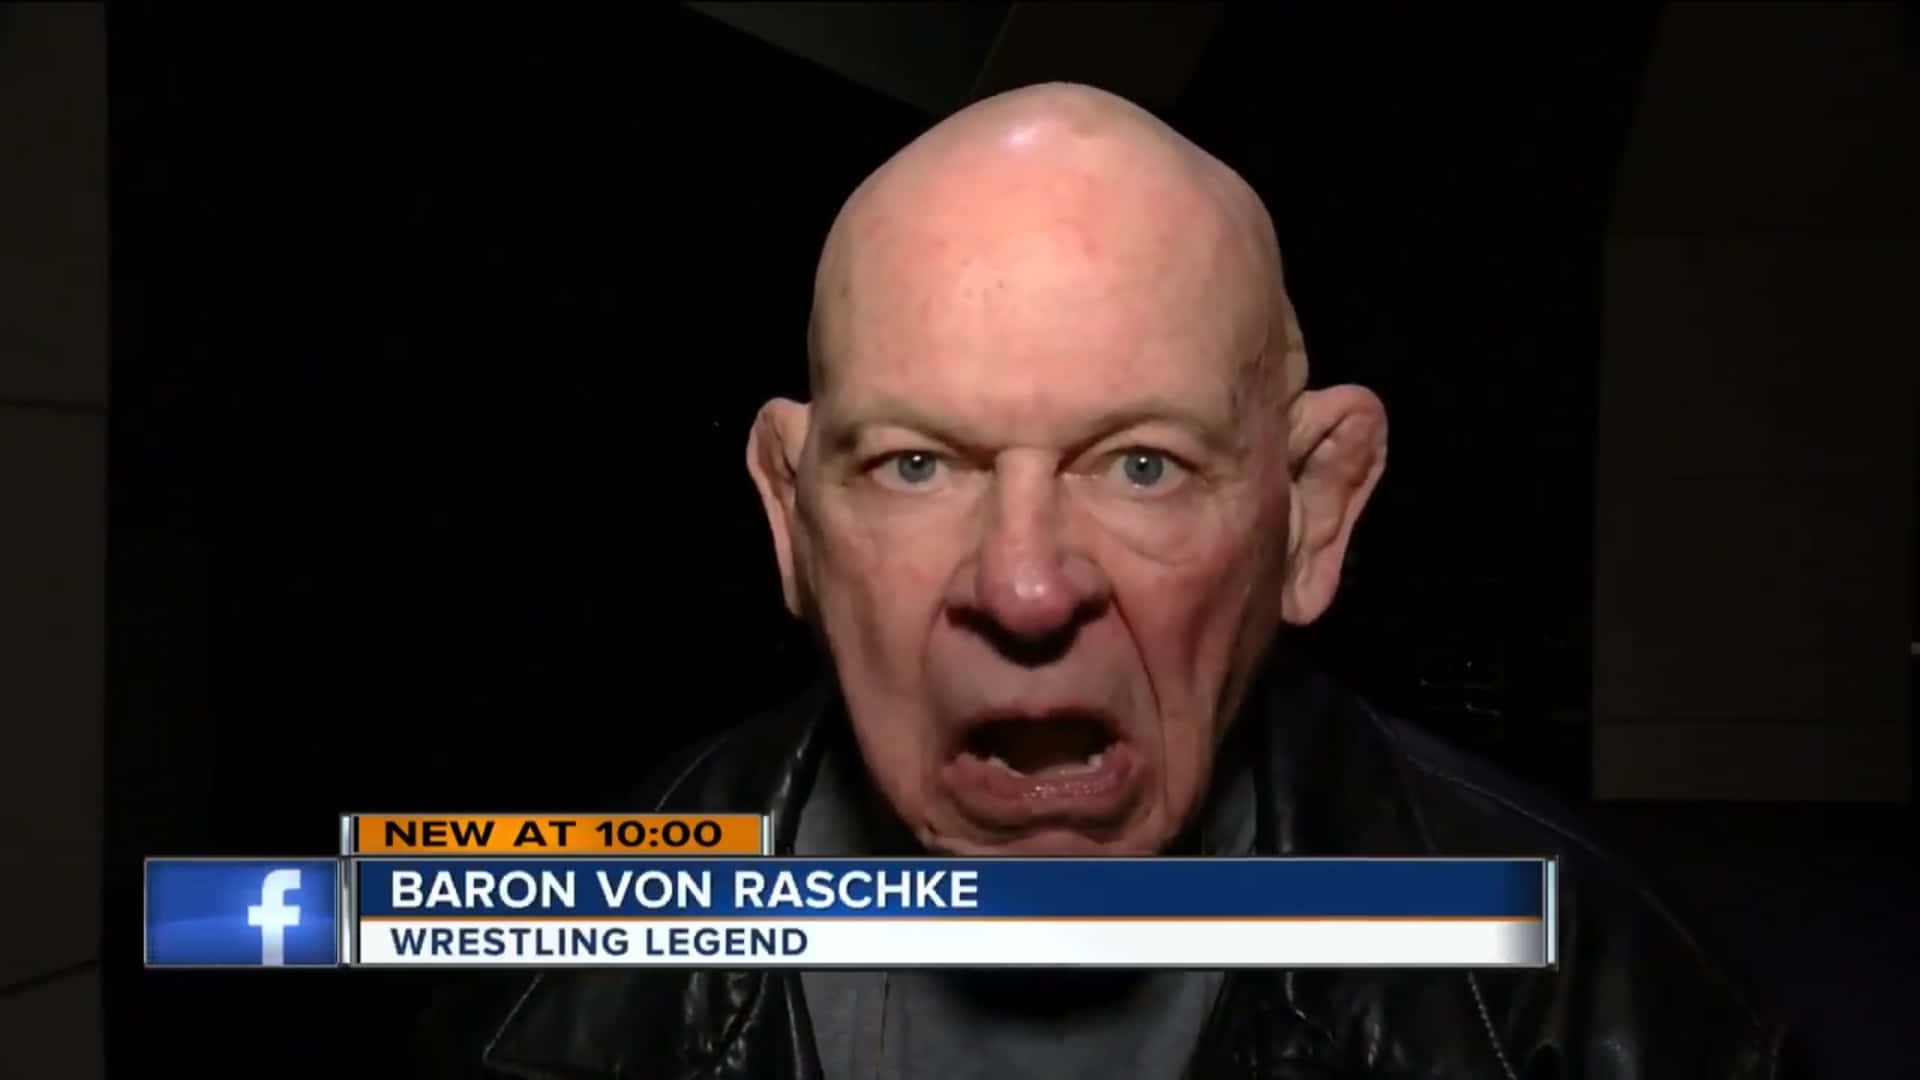 Luchadorestadounidense Baron Von Raschke En Las Noticias De Tmj4. Fondo de pantalla